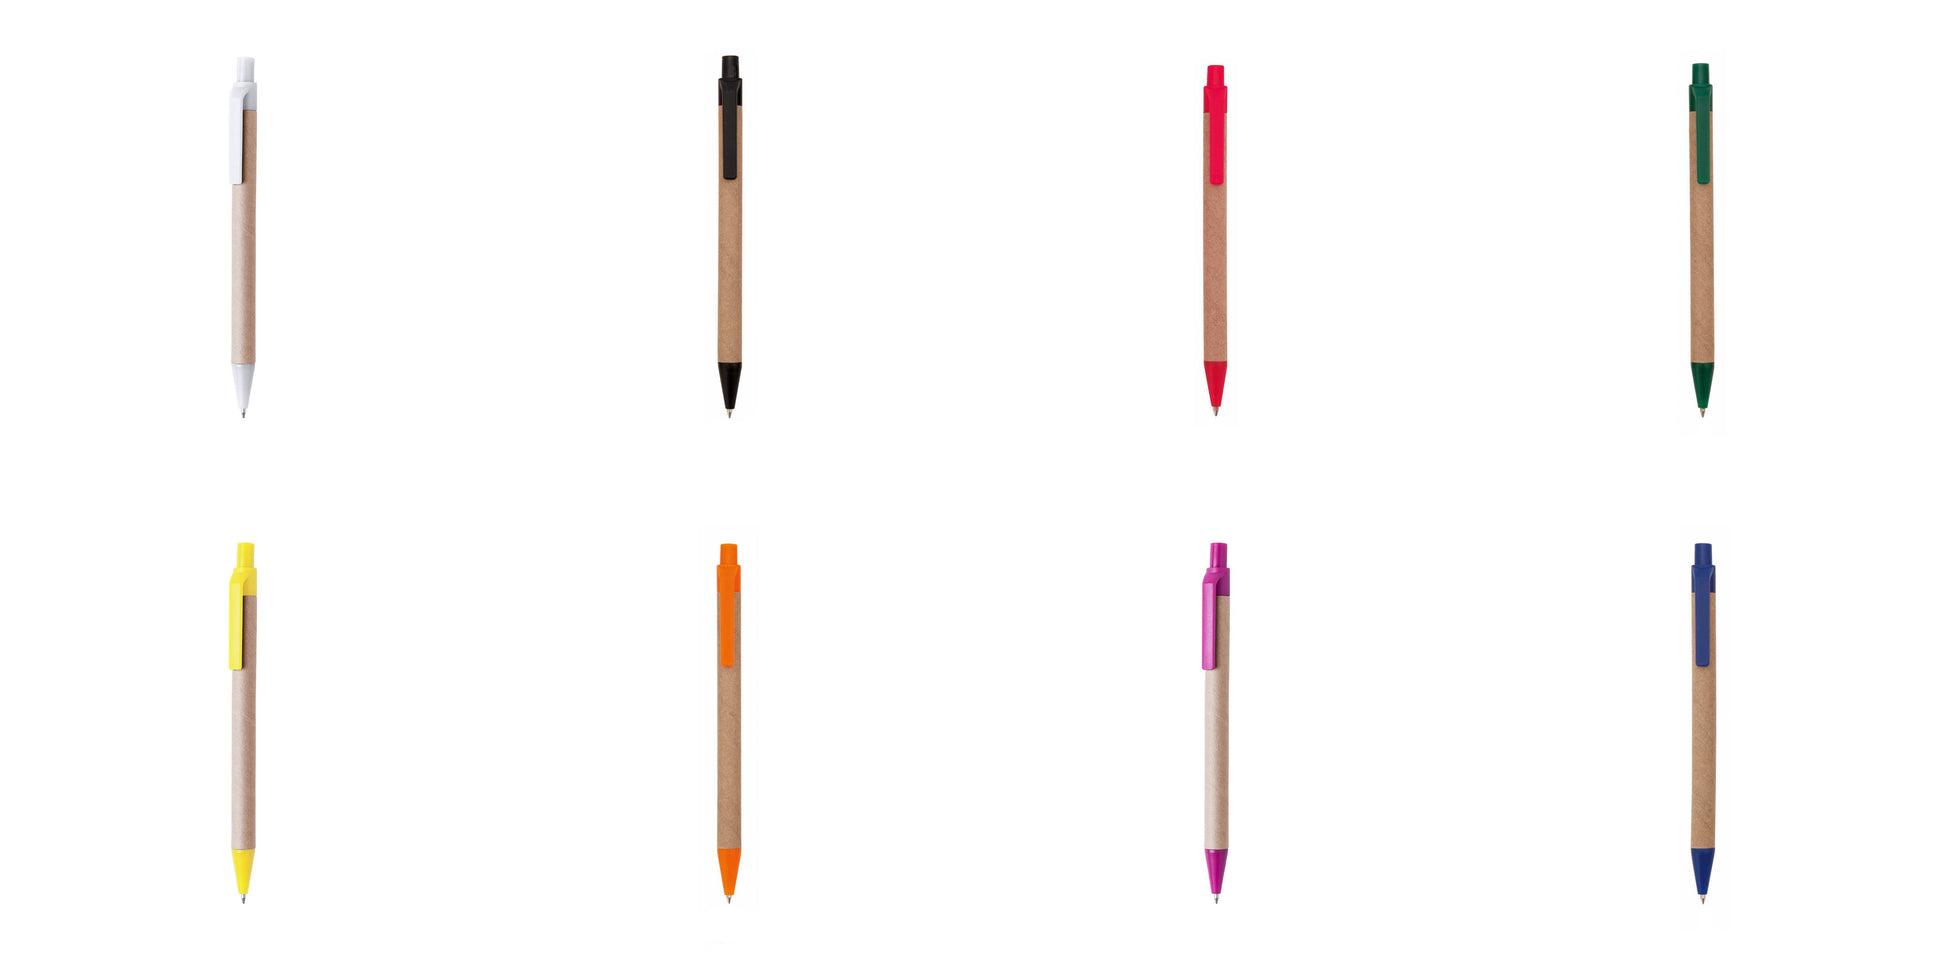 stylo tori Disponible dans une variété de couleurs vives, permettant une personnalisation selon les préférences.